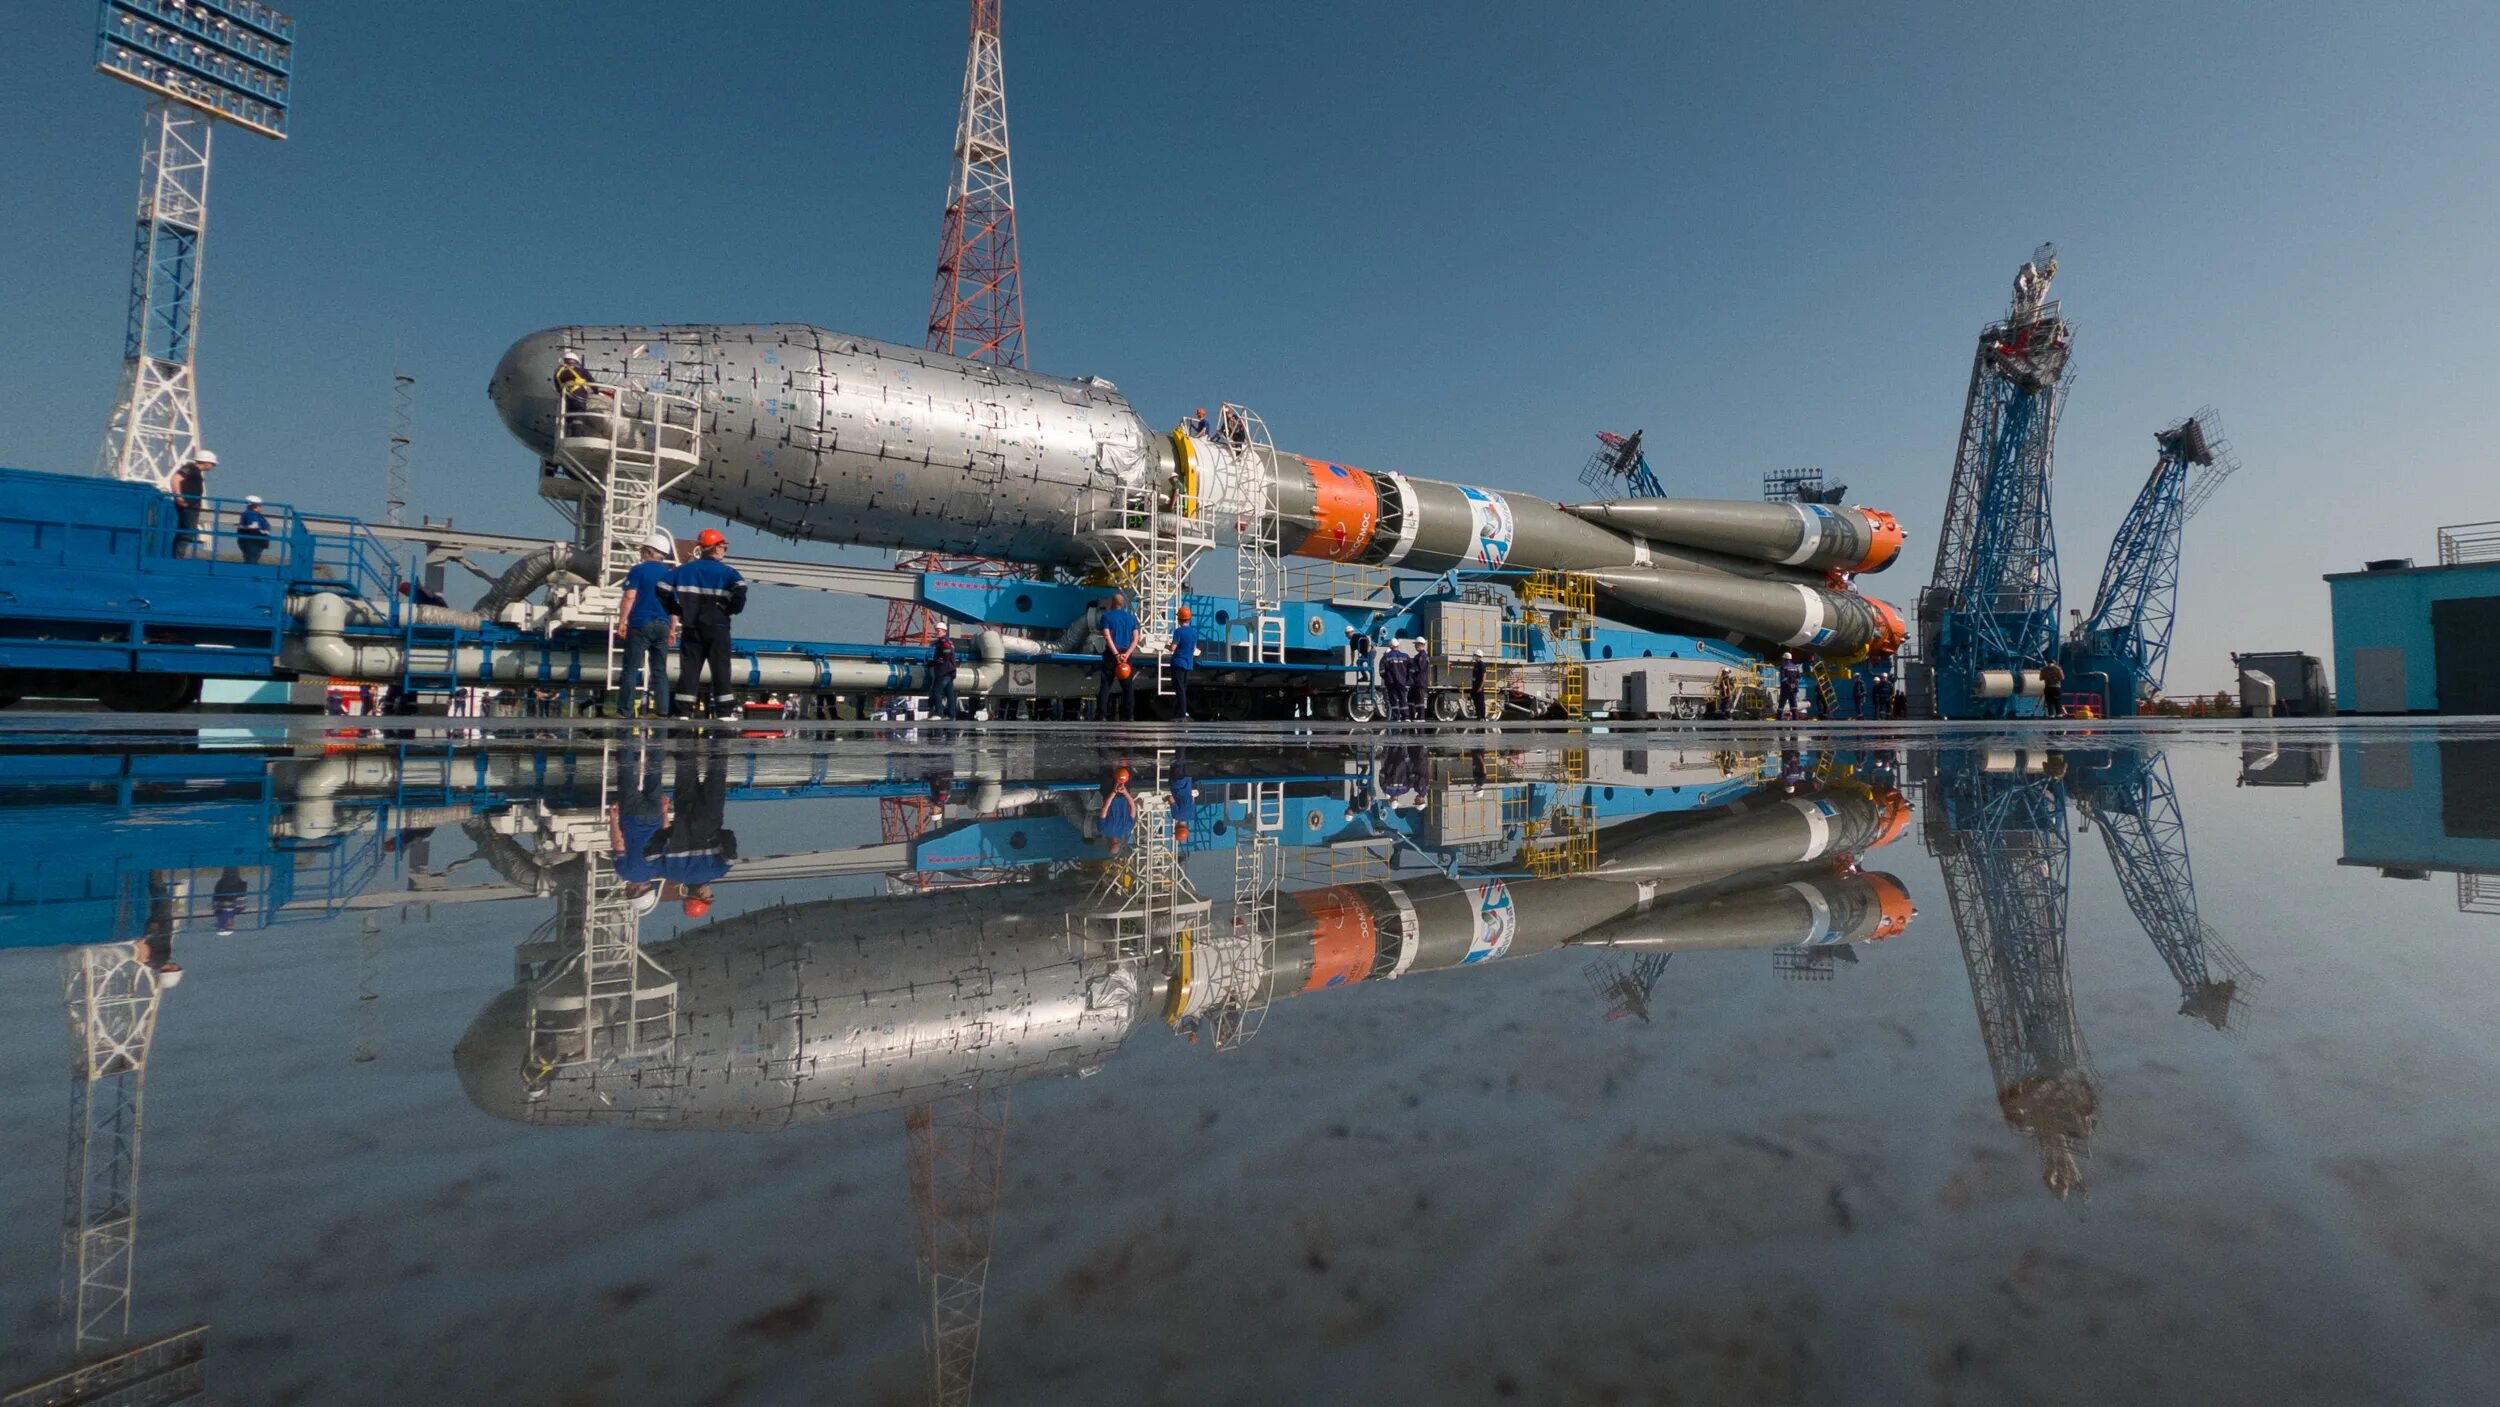 Космодром Восточный космонавтики. Роскосмос космодром Восточный. Космодромы России Восточный. Самый большой космодром в мире.